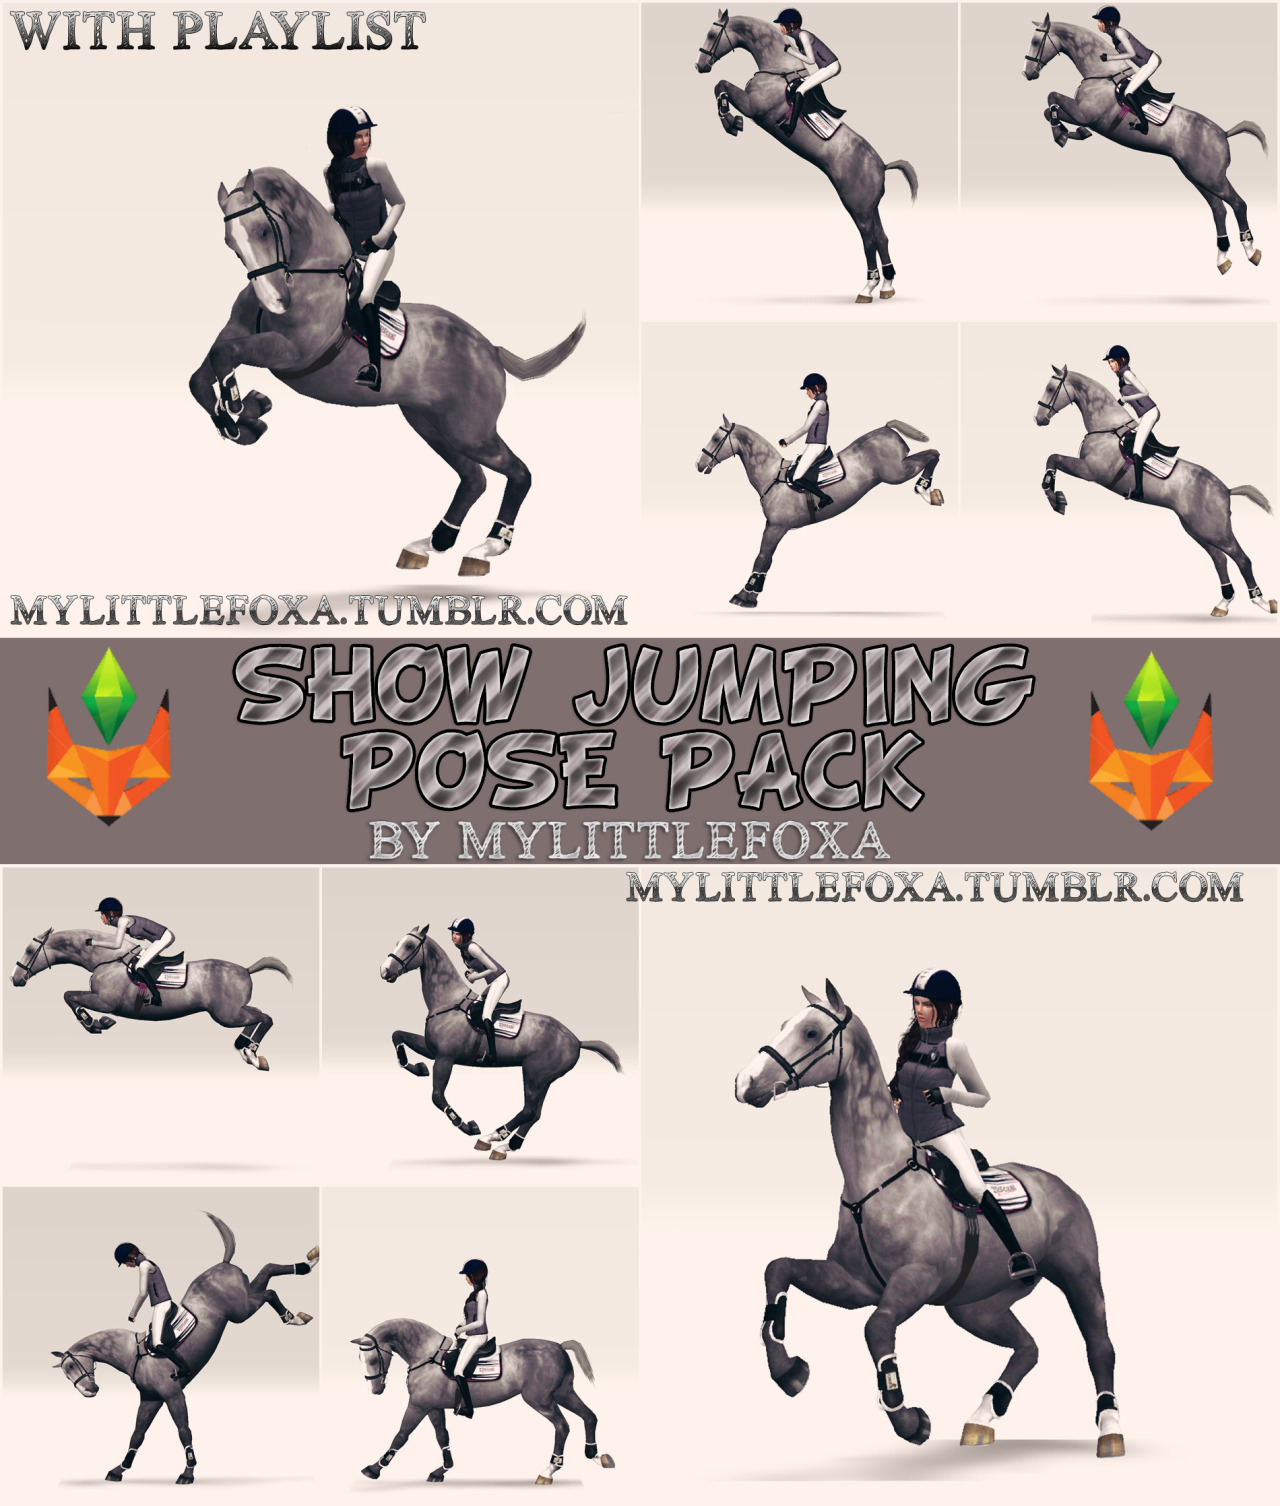 ✖Позы “ Show jumping ”✖
✖Poses “ Show jumping “✖
______________________________
✖В архиве 10 поз для всадника и лошади / These are 10 poses for rider and horse;
✖ Позы с плейлистом/ Poses with playlist;
✖СКАЧАТЬ/DOWNLOAD✖